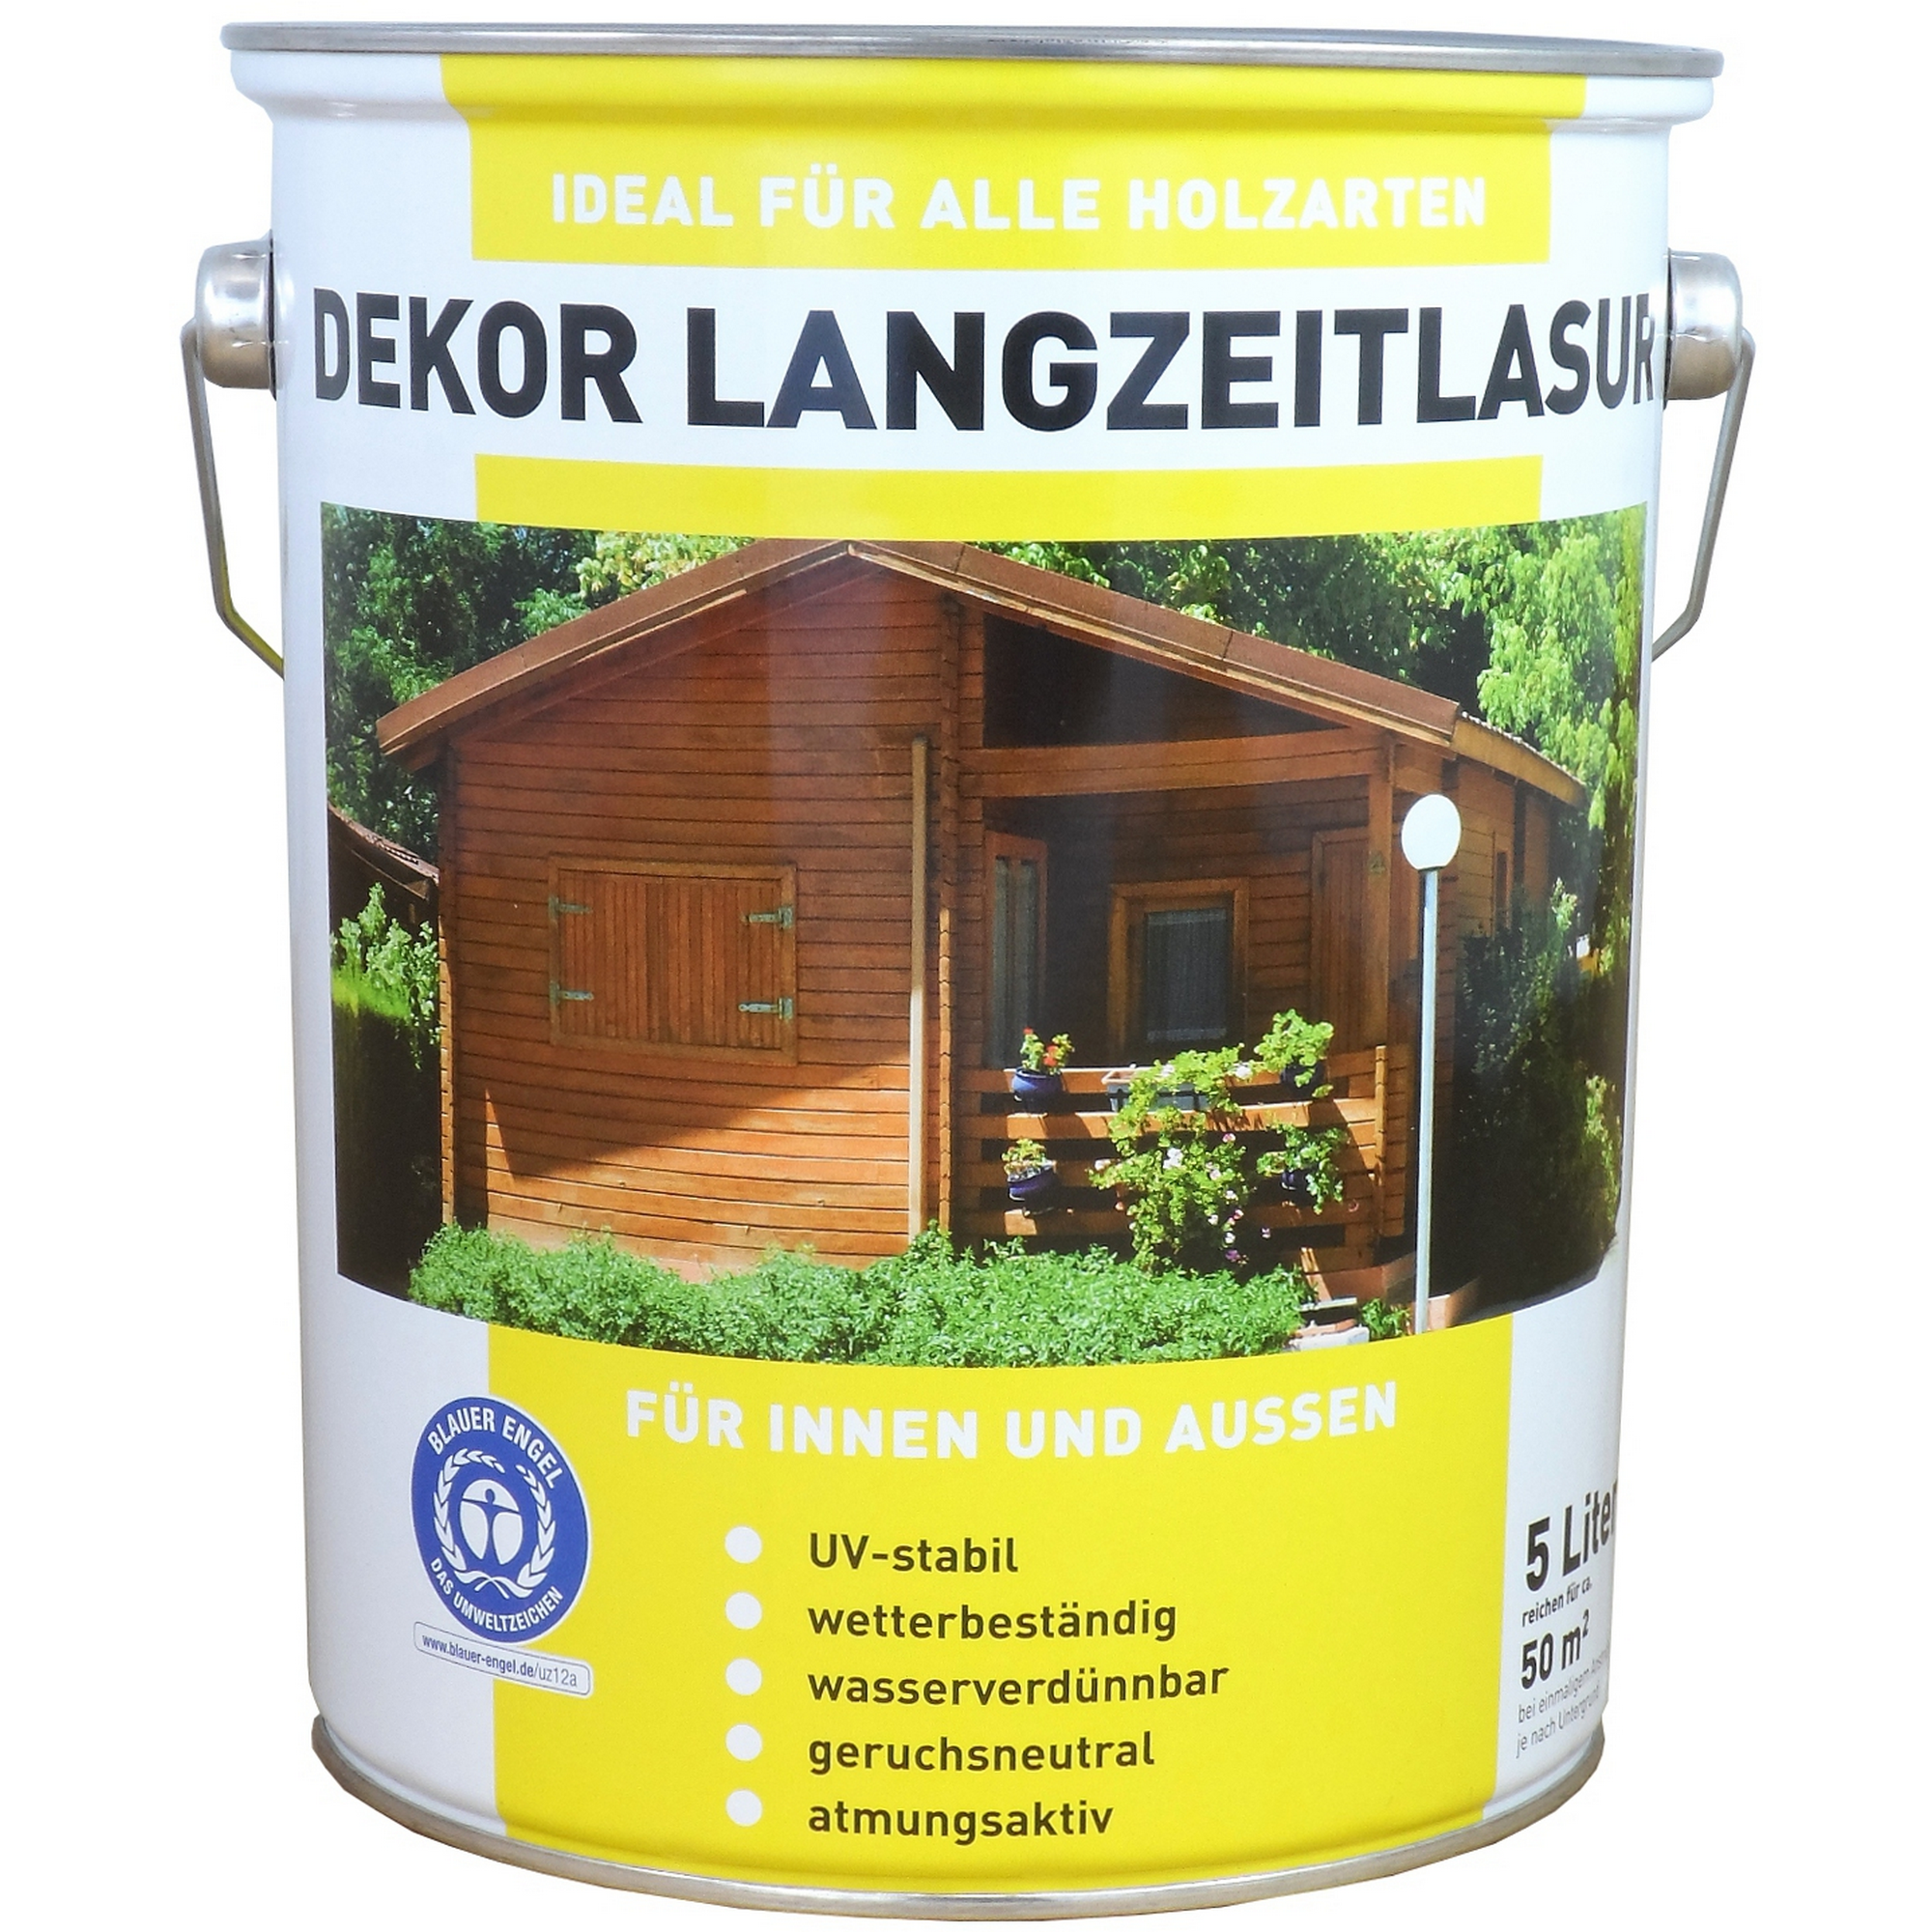 Langzeitlasur 'Dekor' nussbaumfarben 5 l + product picture